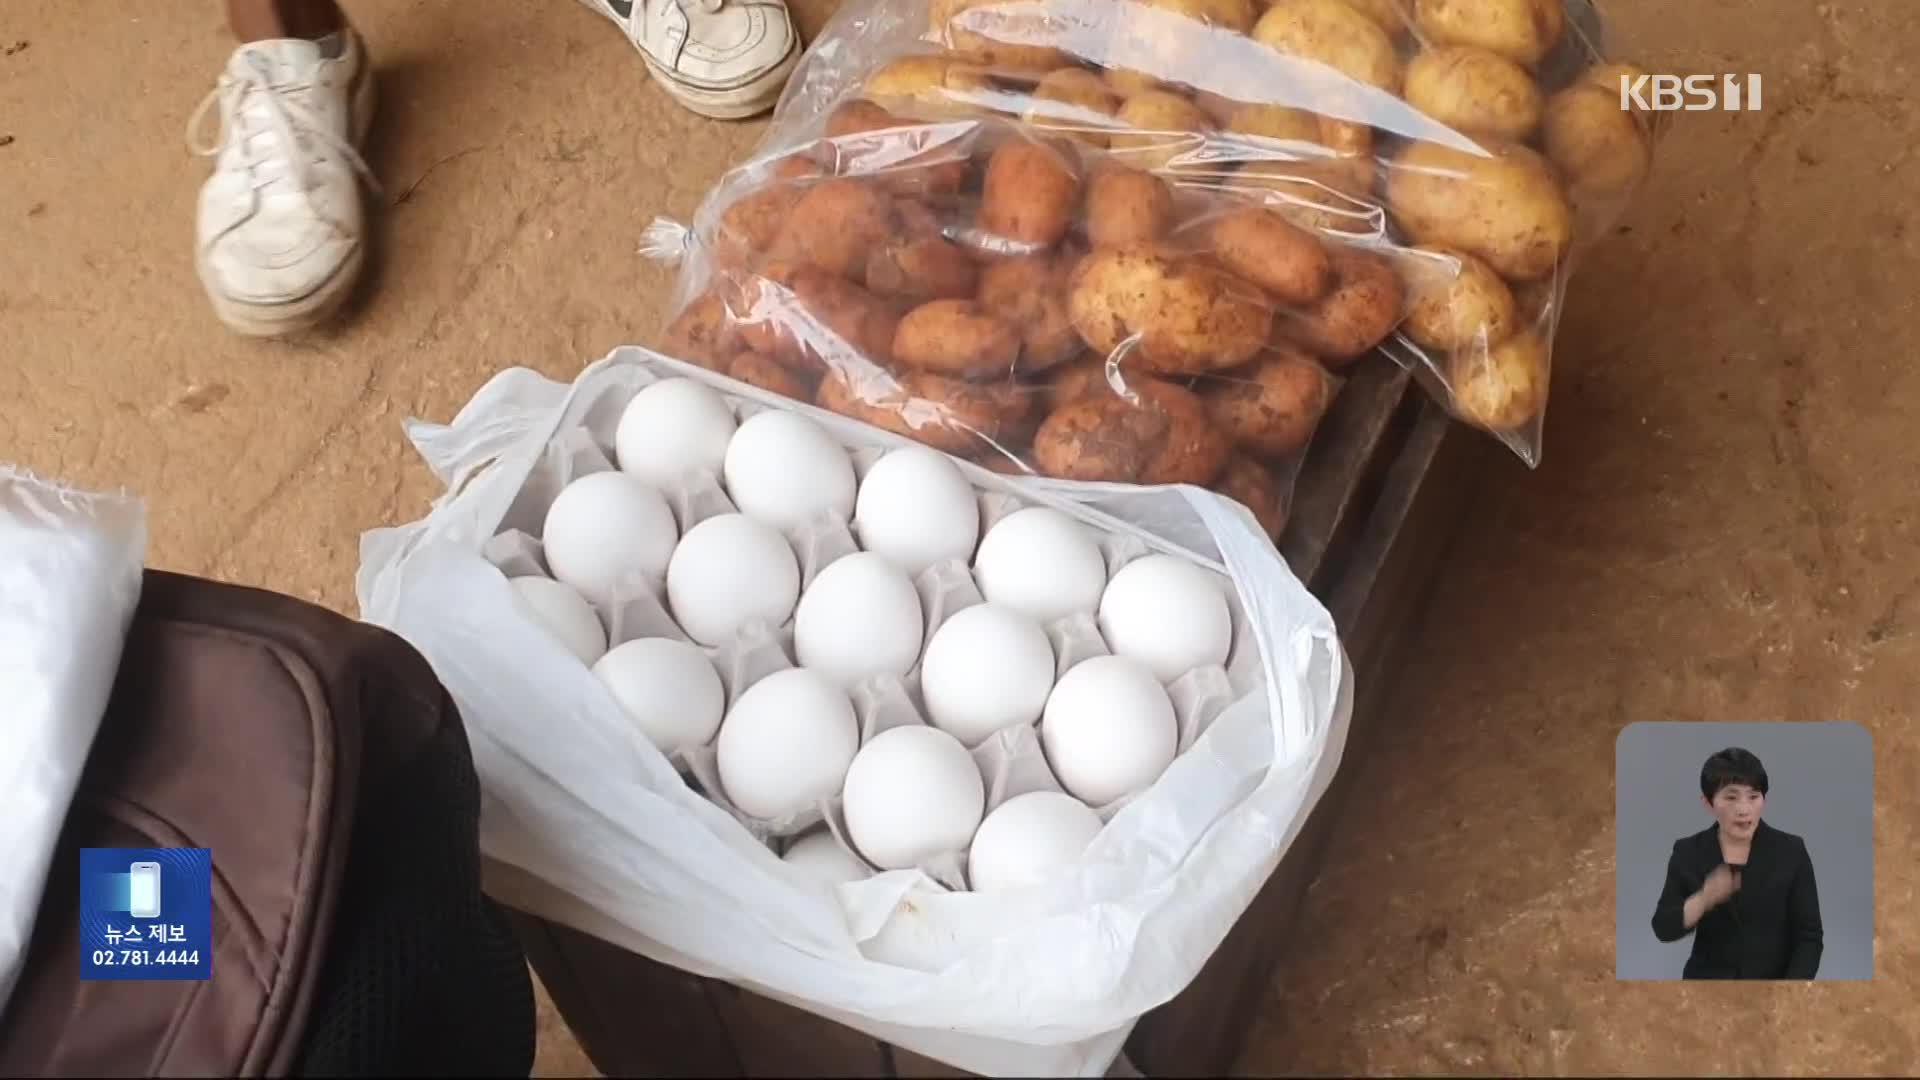 [친절한 뉴스K] “연금으로 달걀 한 판도 못 사”…무너진 쿠바 경제